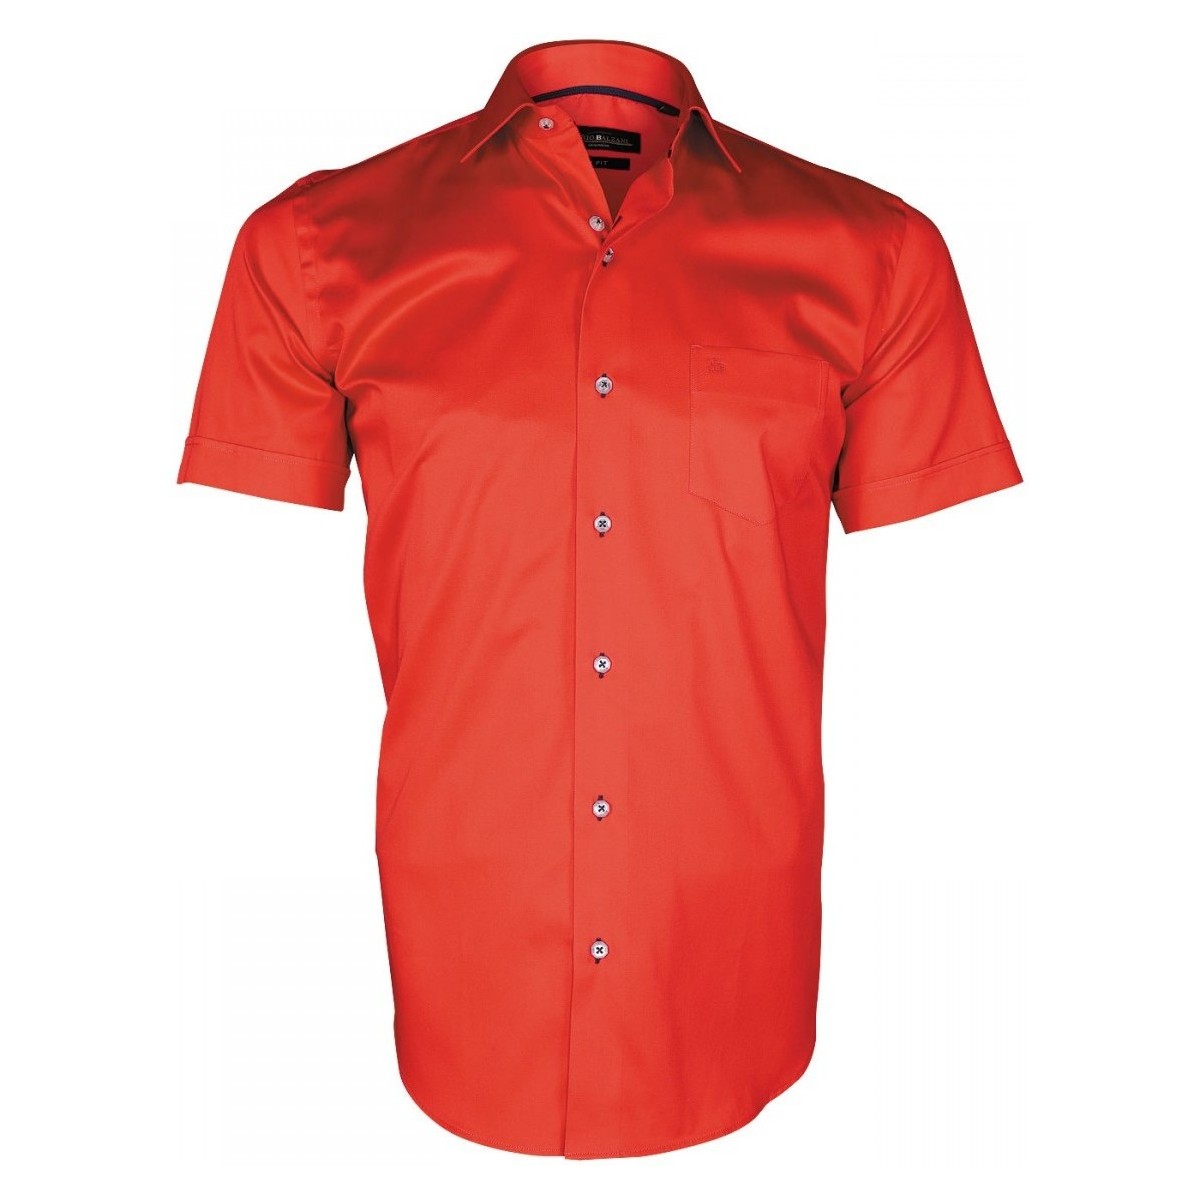 Vêtements Homme Chemises manches courtes Emporio Balzani chemisette en popeline montebello rouge Rouge